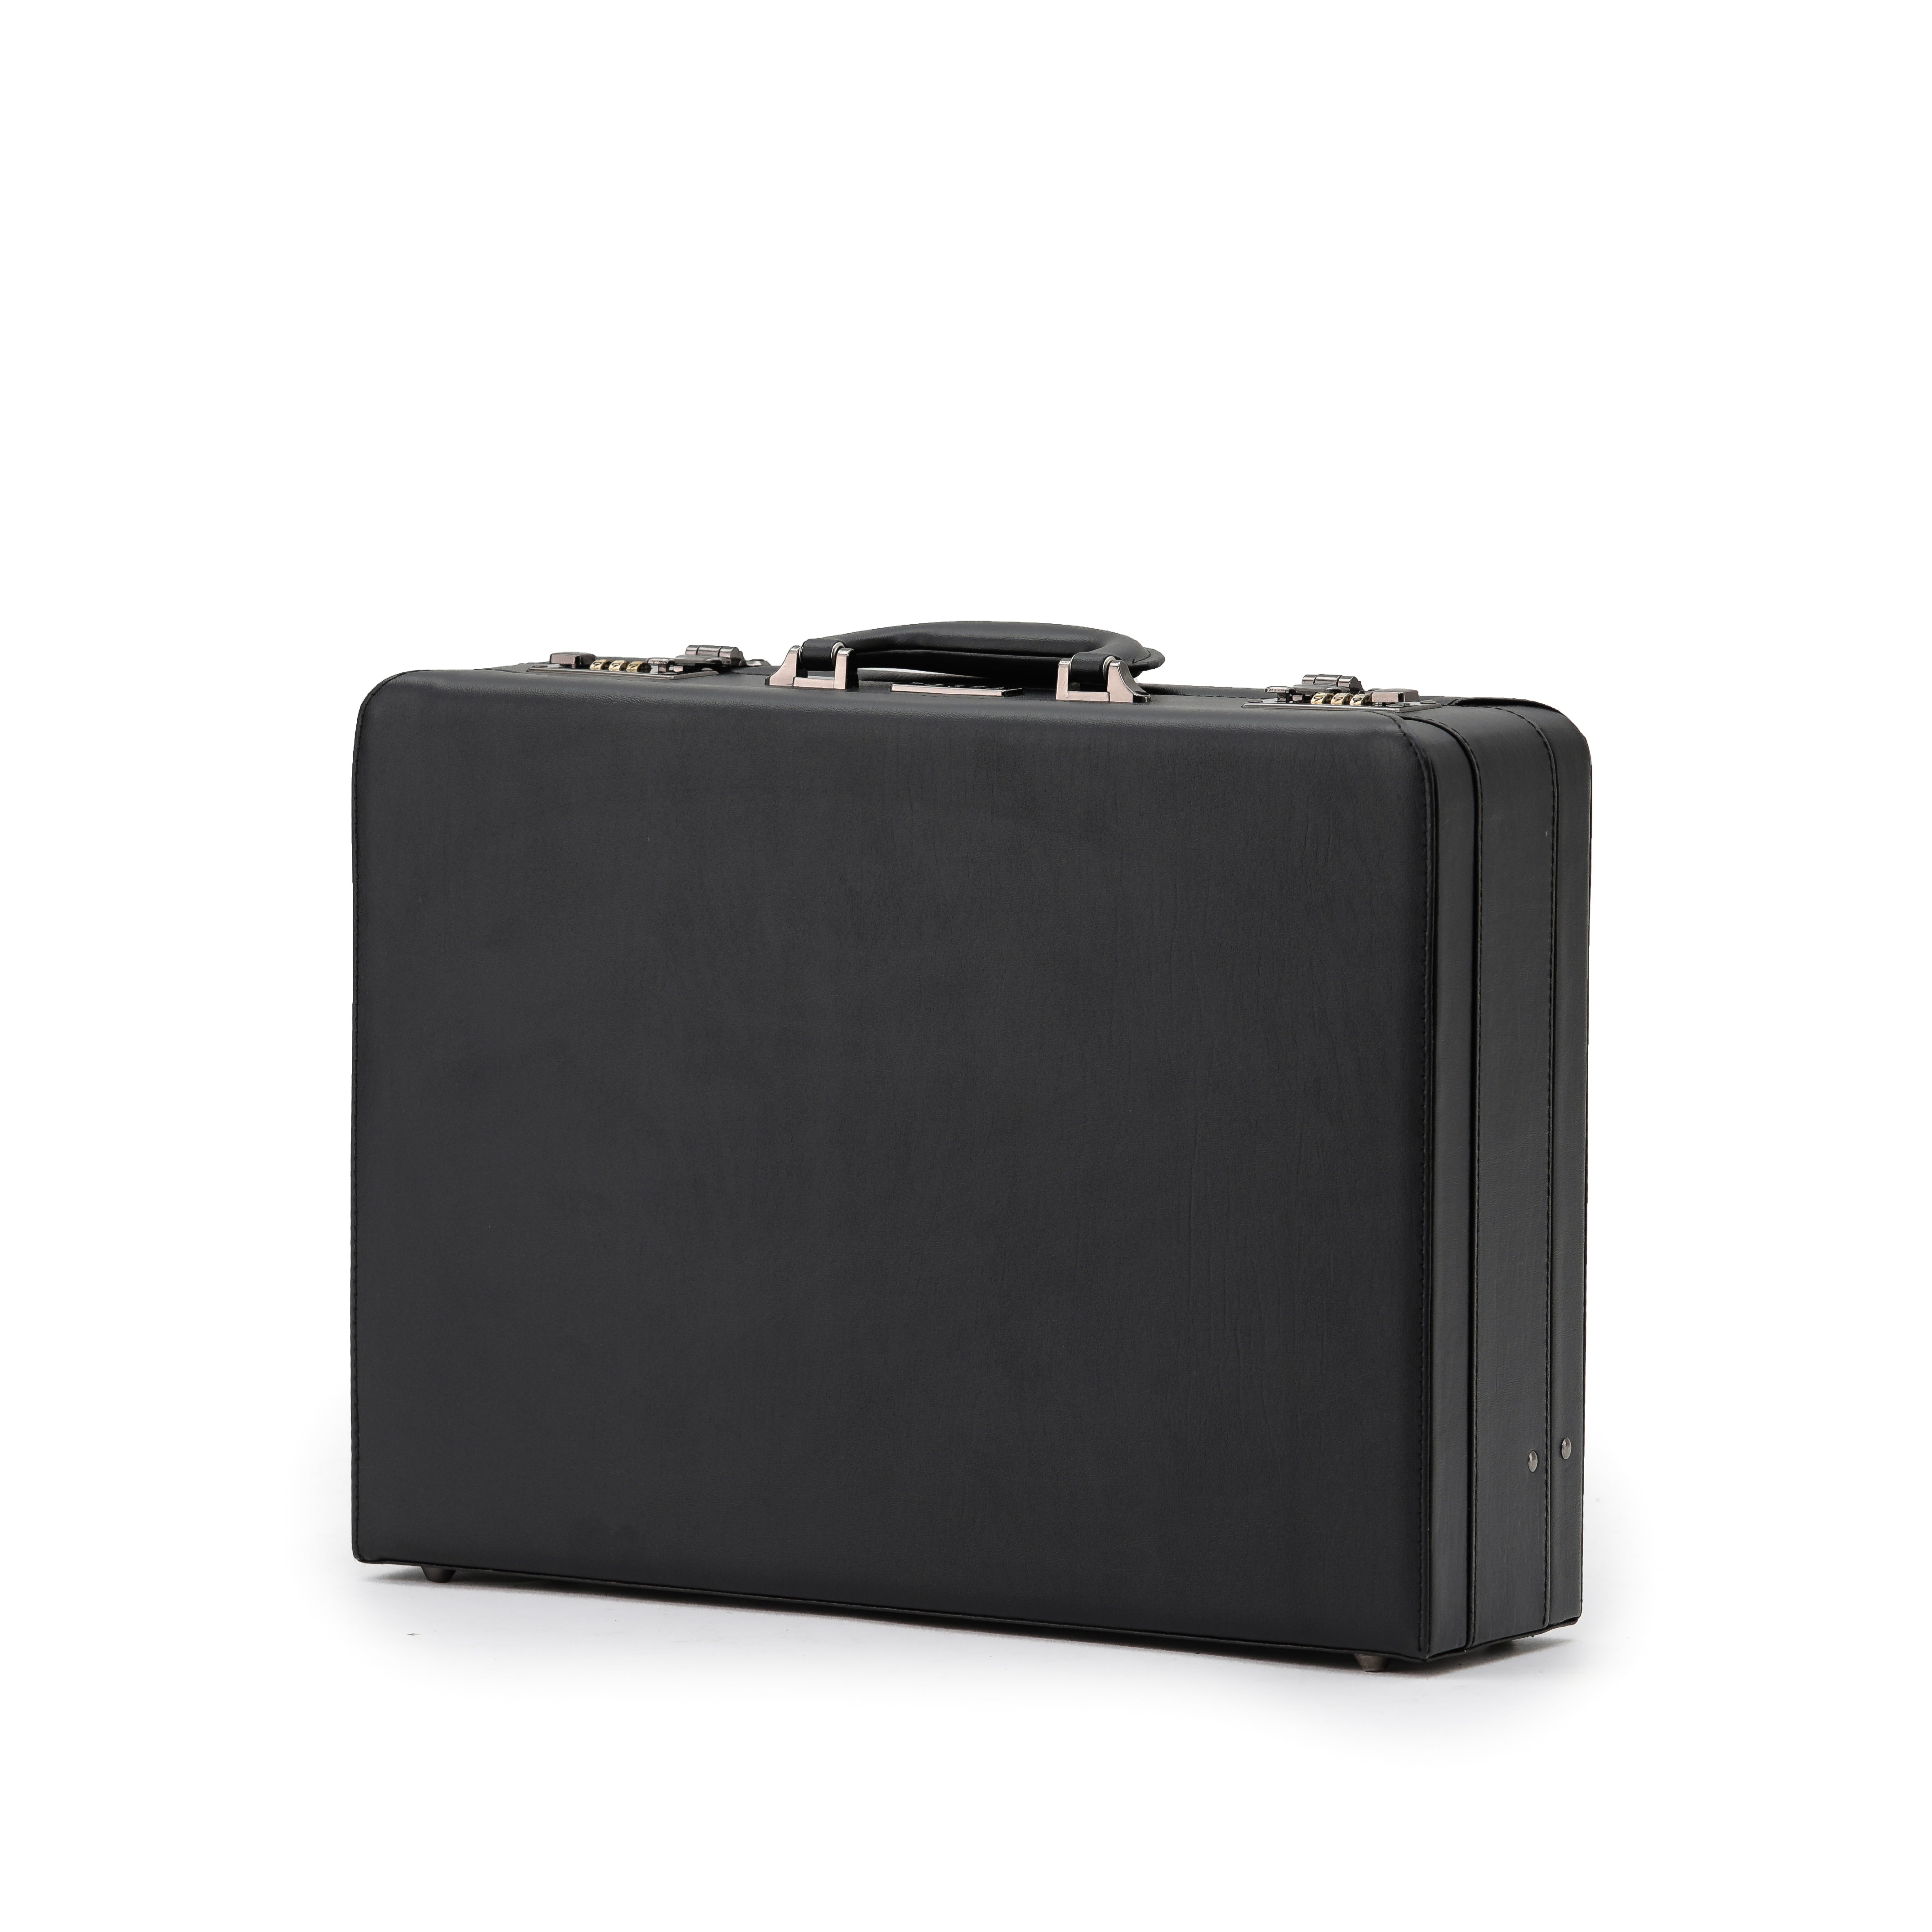 Tosca - TCA2605 attache briefcase - Black-2